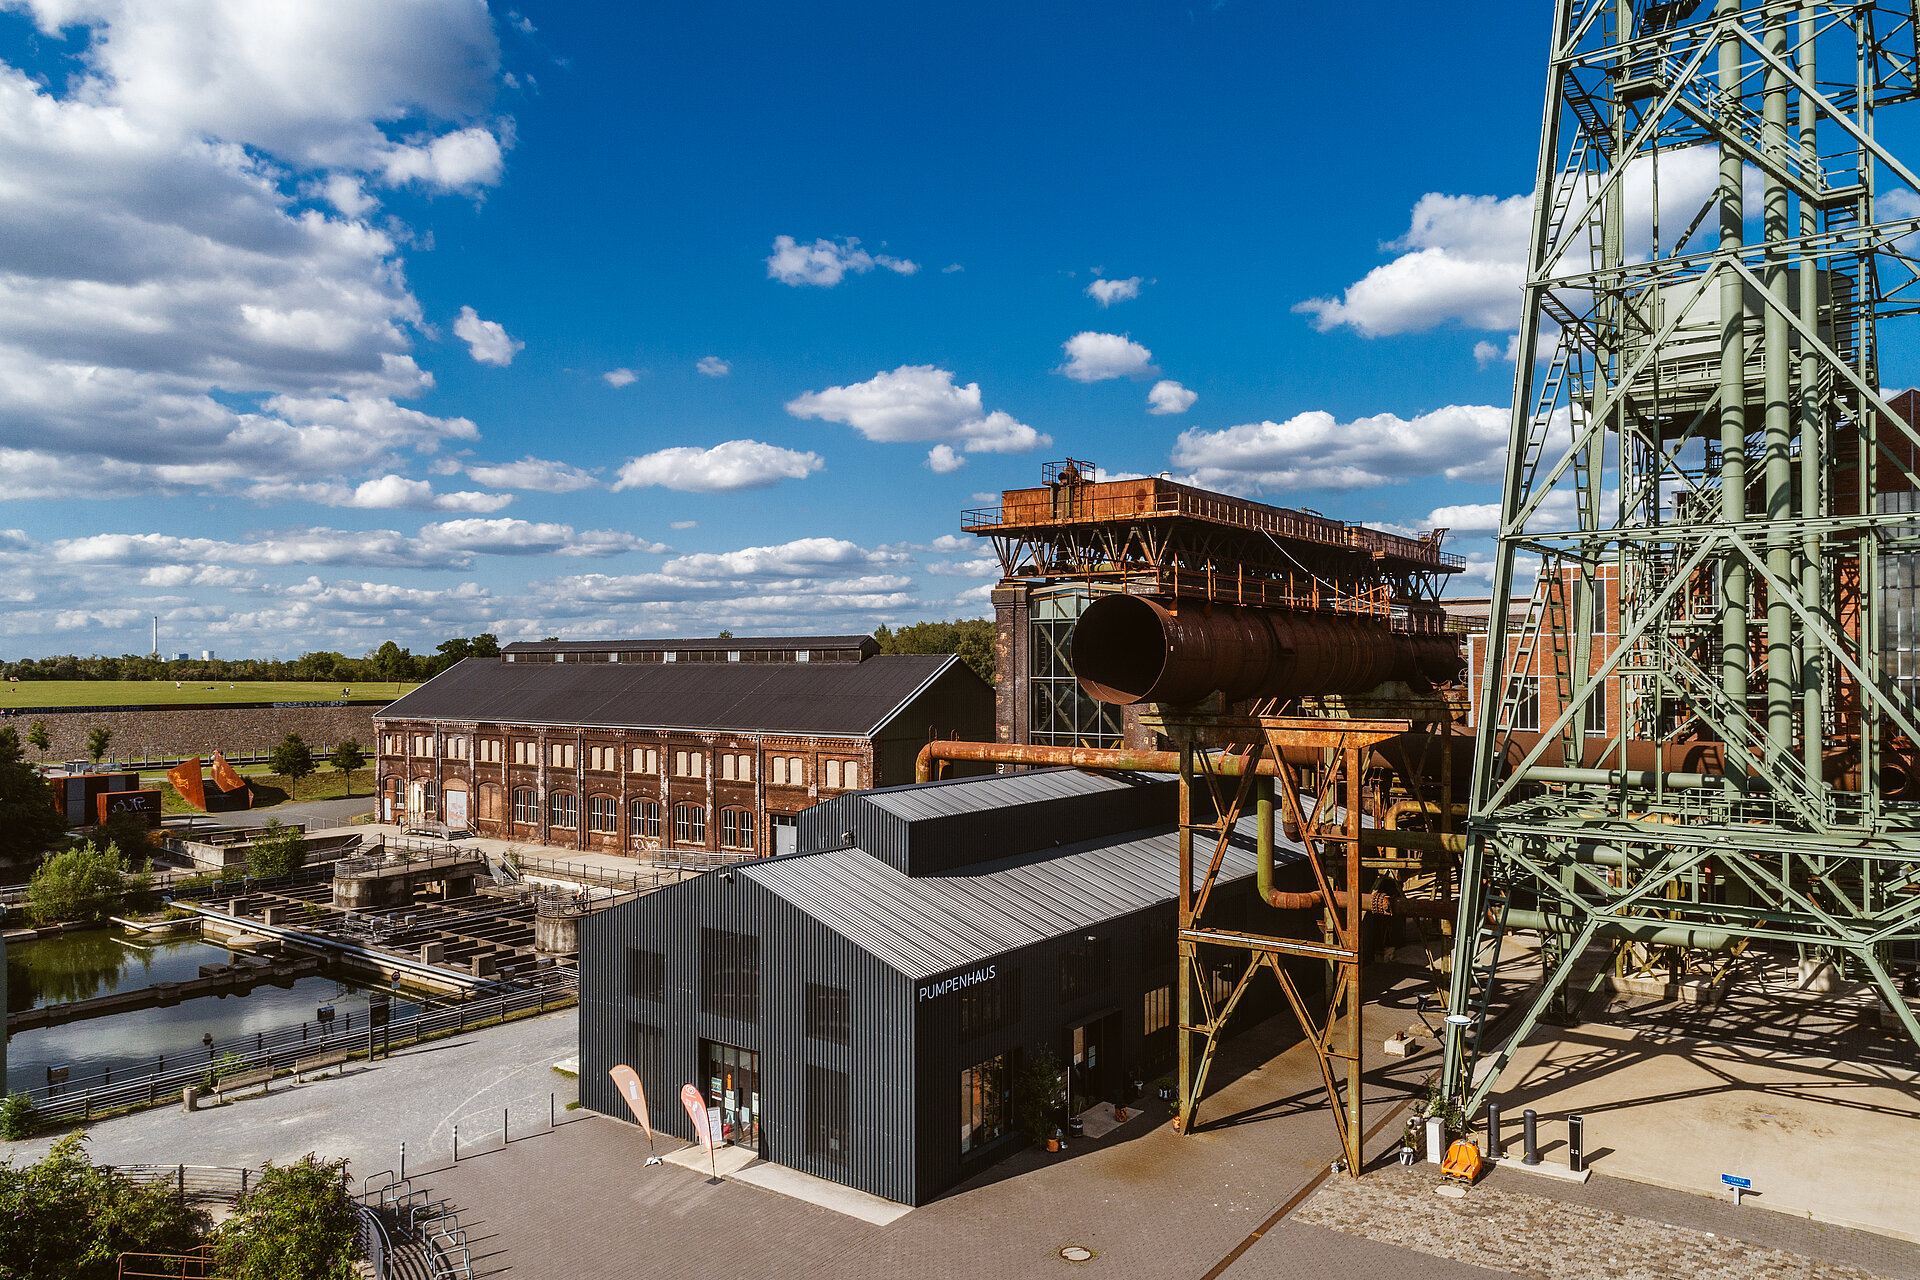 Blick auf das Gelände der Jahrhunderthalle Bochum mit Turbinenhalle, Dampfgebläsehalle, Pumpenhaus und Wasserturm.